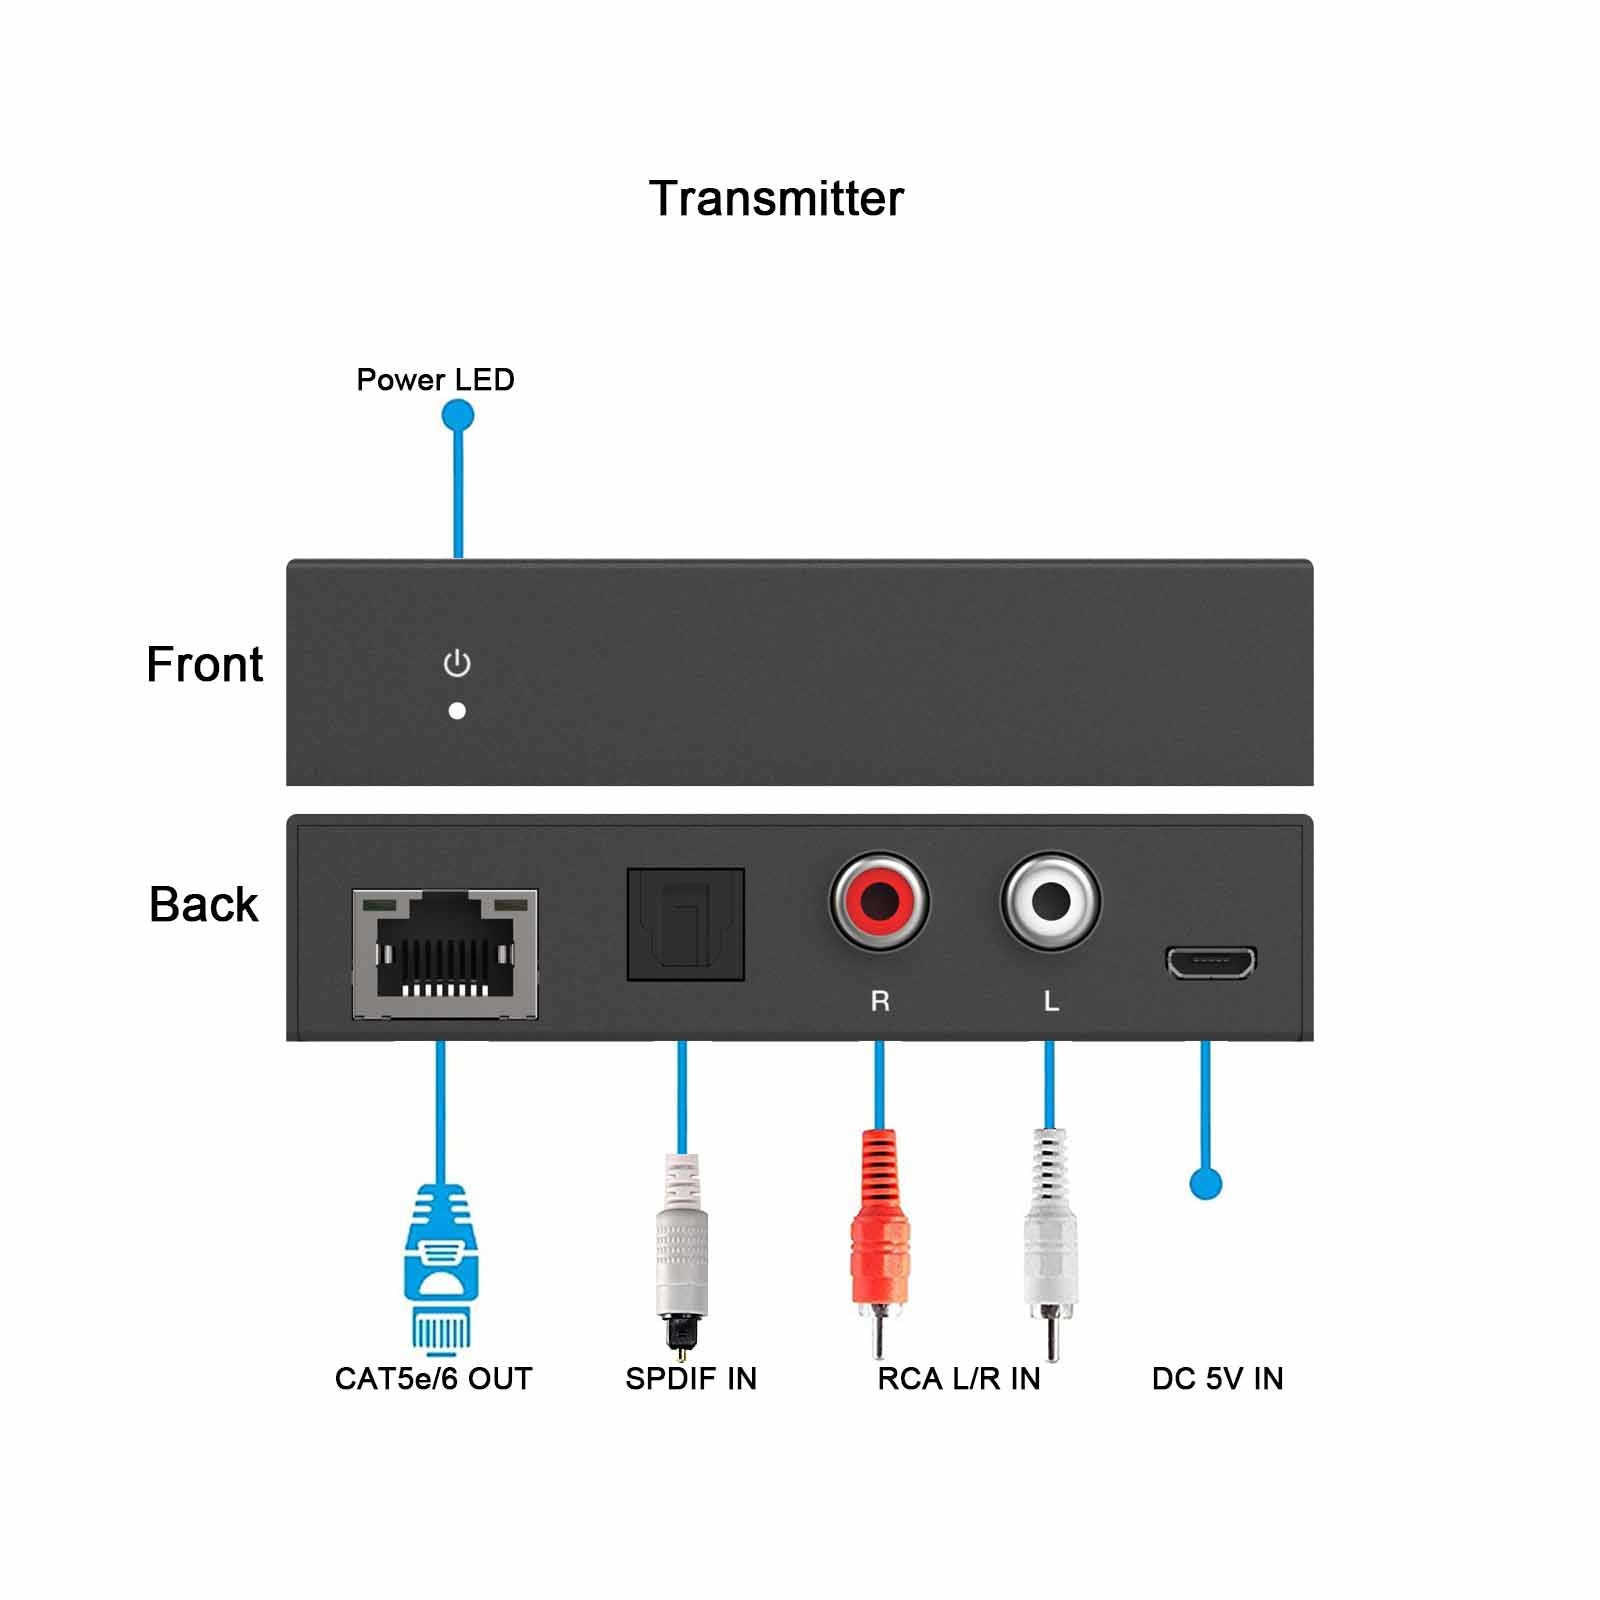 SPDIF RCA L/R Audio Extender over Cat5e/6 Cable 300m transmitter description